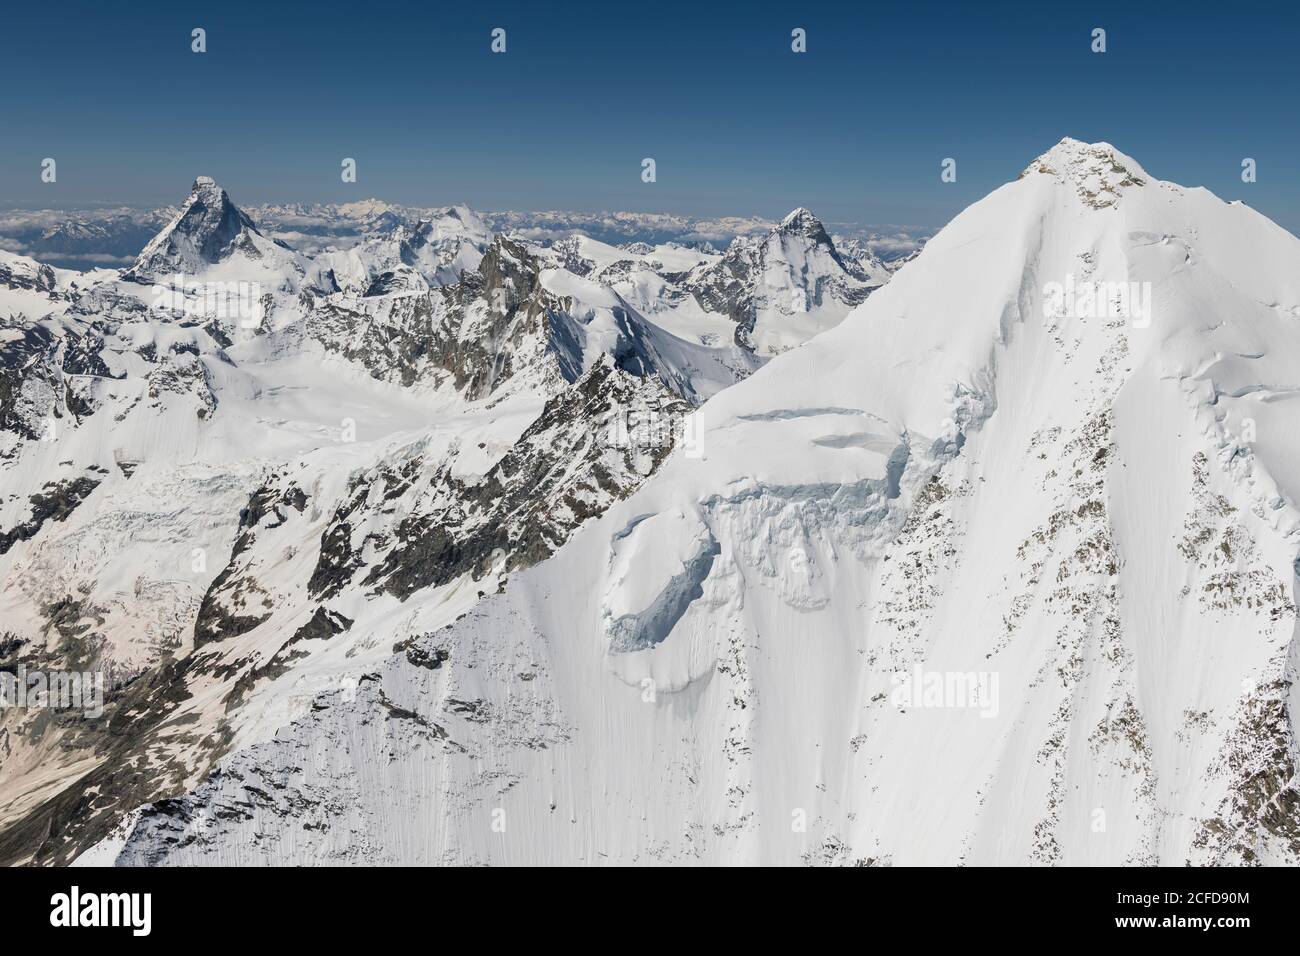 Switzerland, Valais canton, Valais Alps, Weisshorn Ostgrat in the foreground, Matterhorn, Dent d'Herens, Obergabelhorn, Zinalrothorn and Dent Blanche Stock Photo